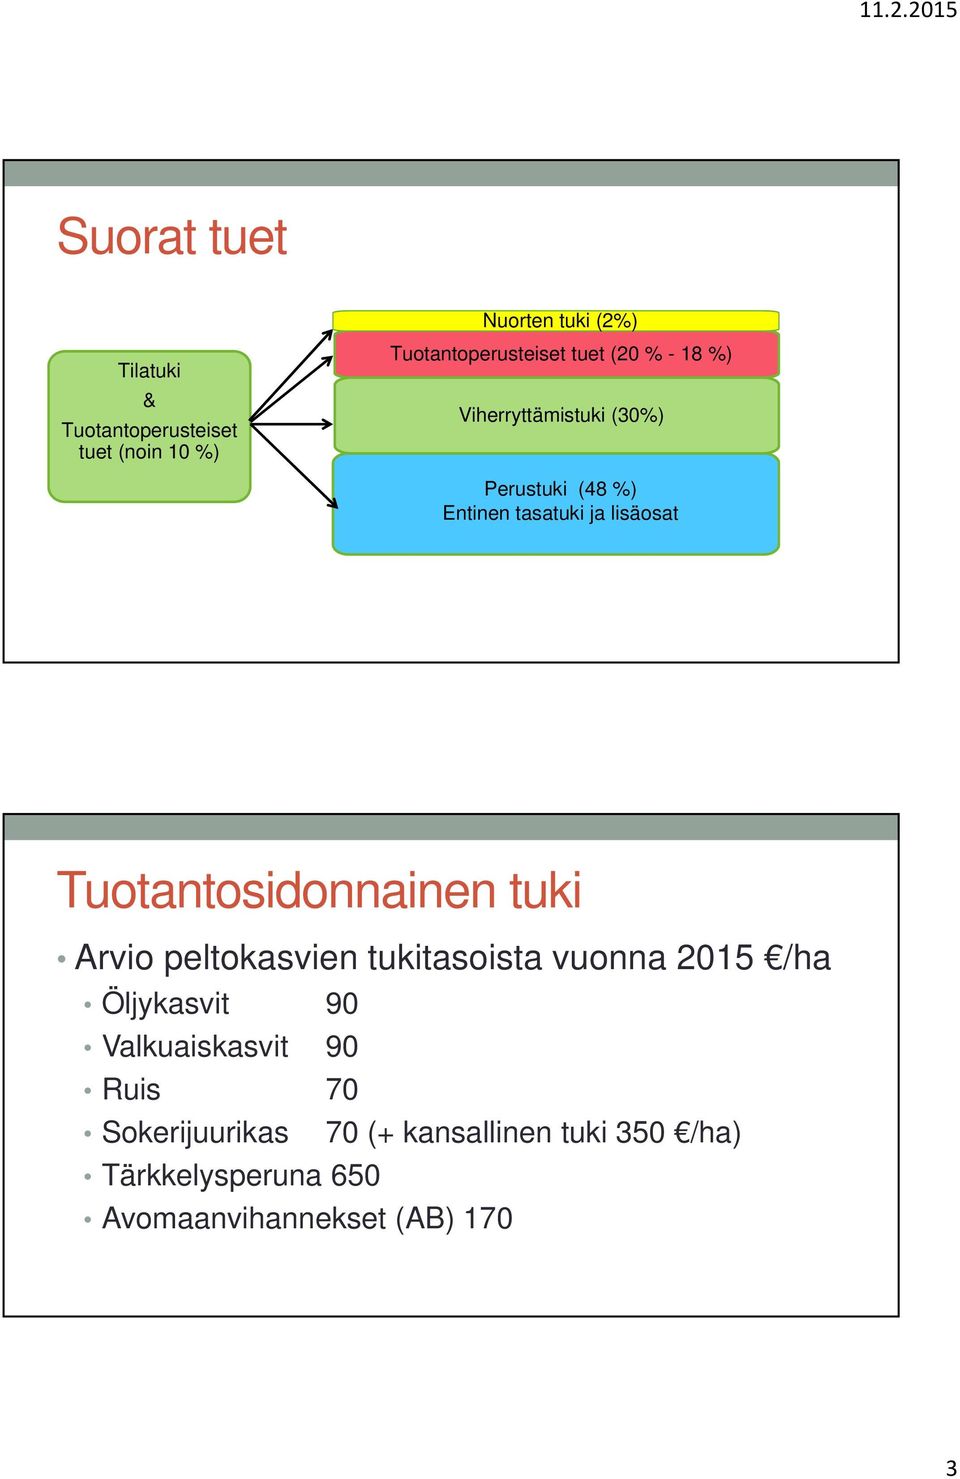 Tuotantosidonnainen tuki Arvio peltokasvien tukitasoista vuonna 2015 /ha Öljykasvit 90